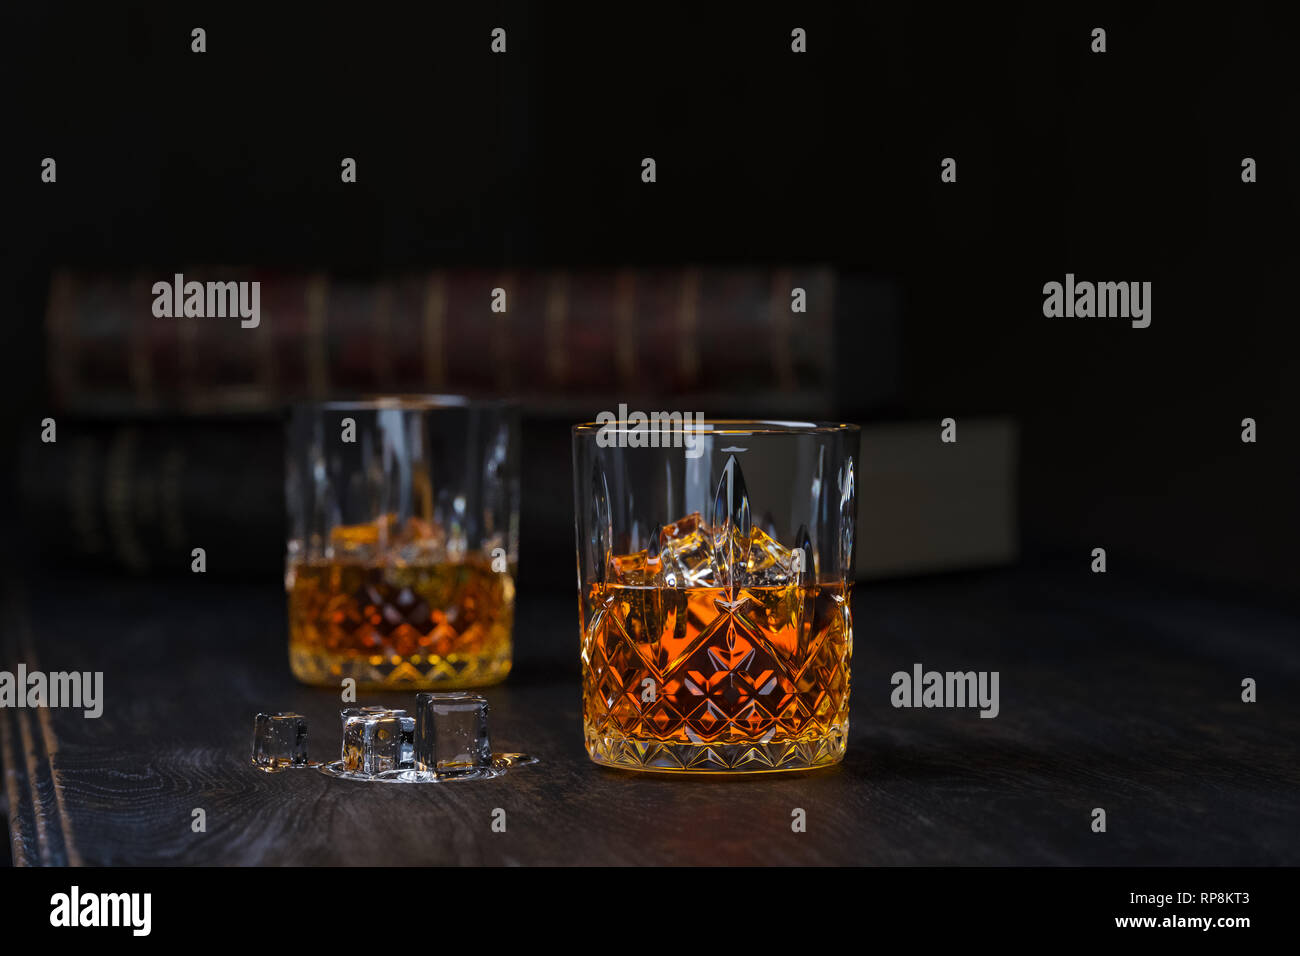 Deux verres de whisky avec de la glace, de se tenir sur une vieille table en bois foncé avec de vieux livres sur un fond noir Banque D'Images